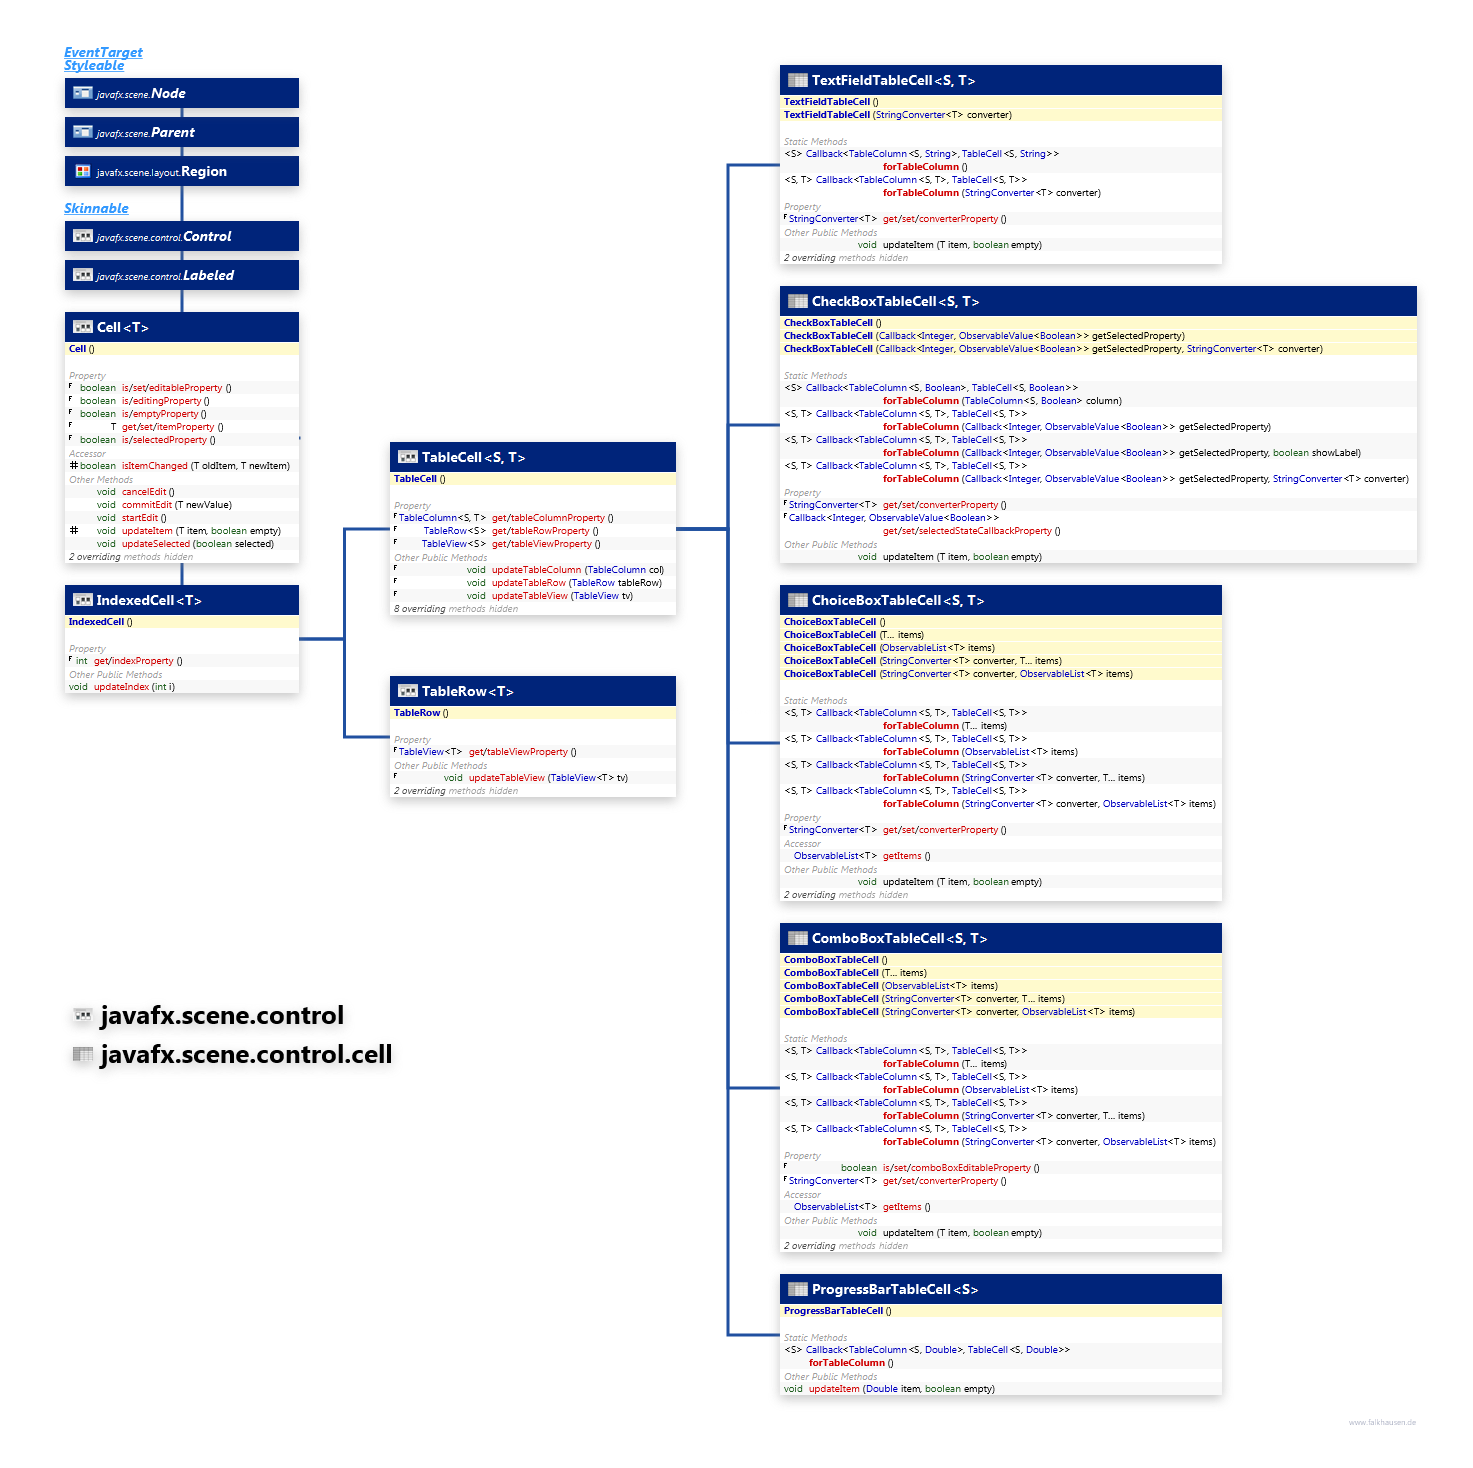 javafx.scene.control.cell javafx.scene.control TableCell class diagram and api documentation for JavaFX 10